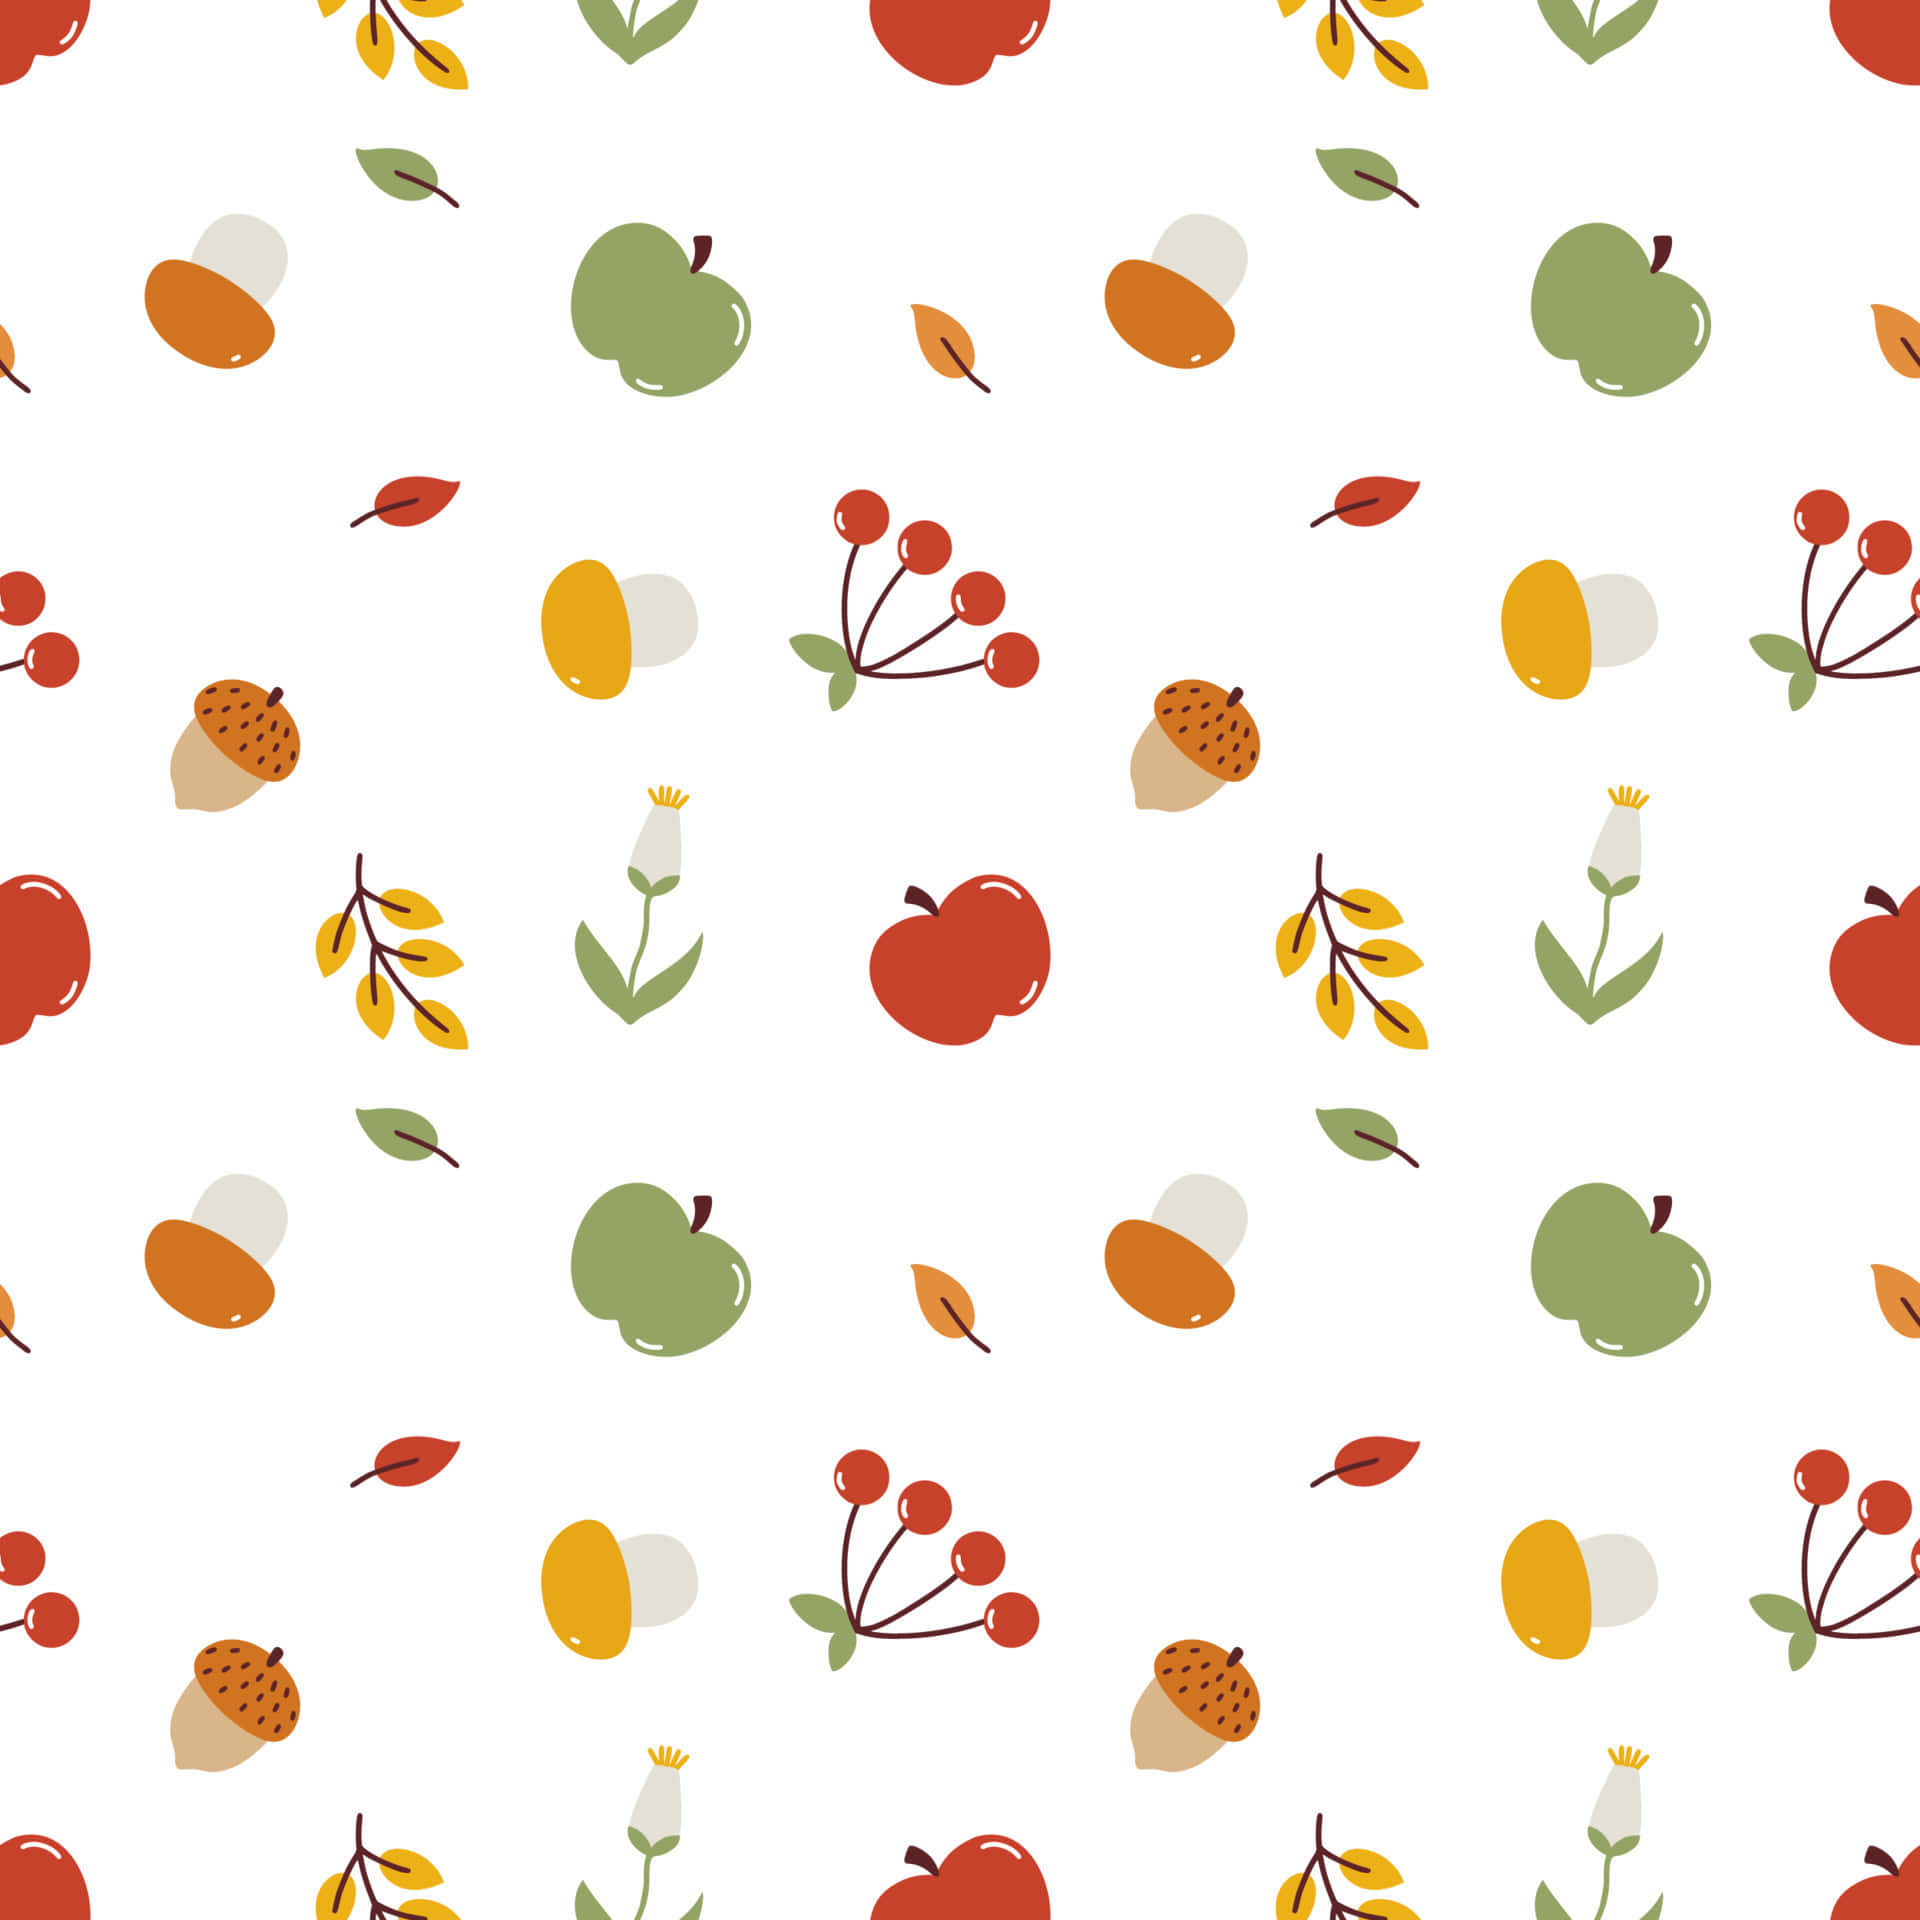 Vibrant Fall Harvest Scene Wallpaper